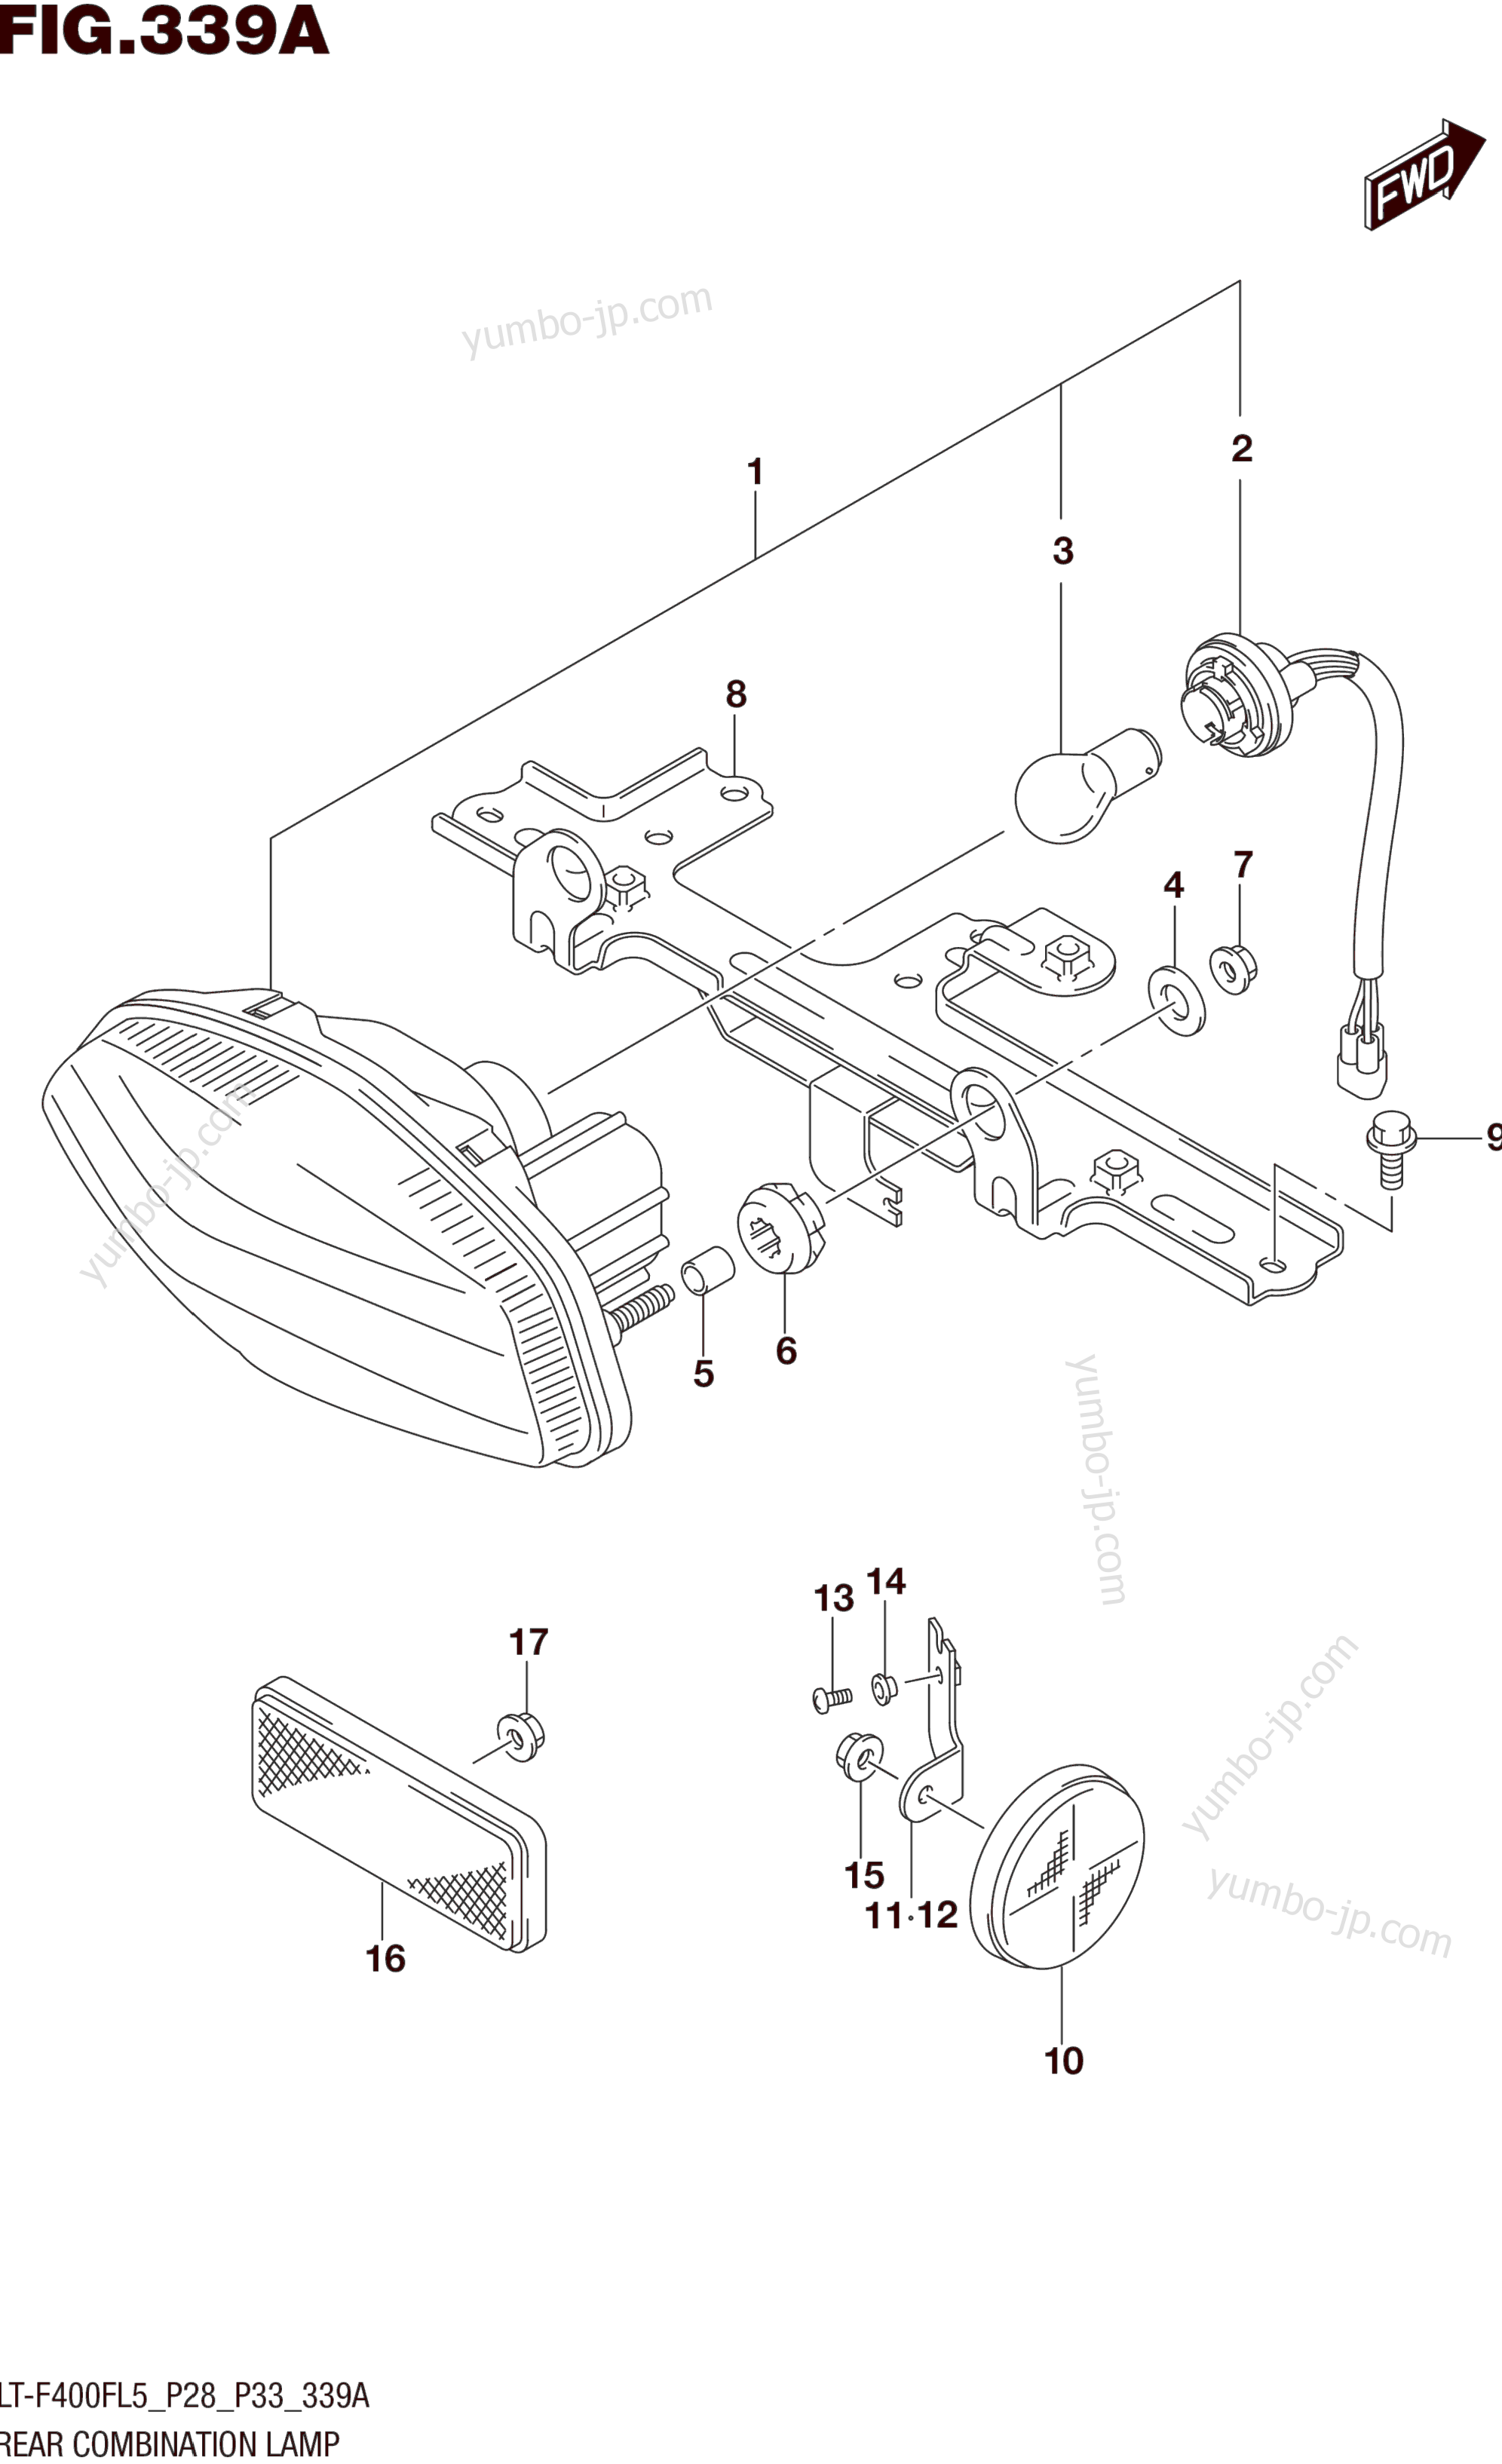 REAR COMBINATION LAMP (LT-F400FL5 P28) for ATVs SUZUKI LT-F400F 2015 year